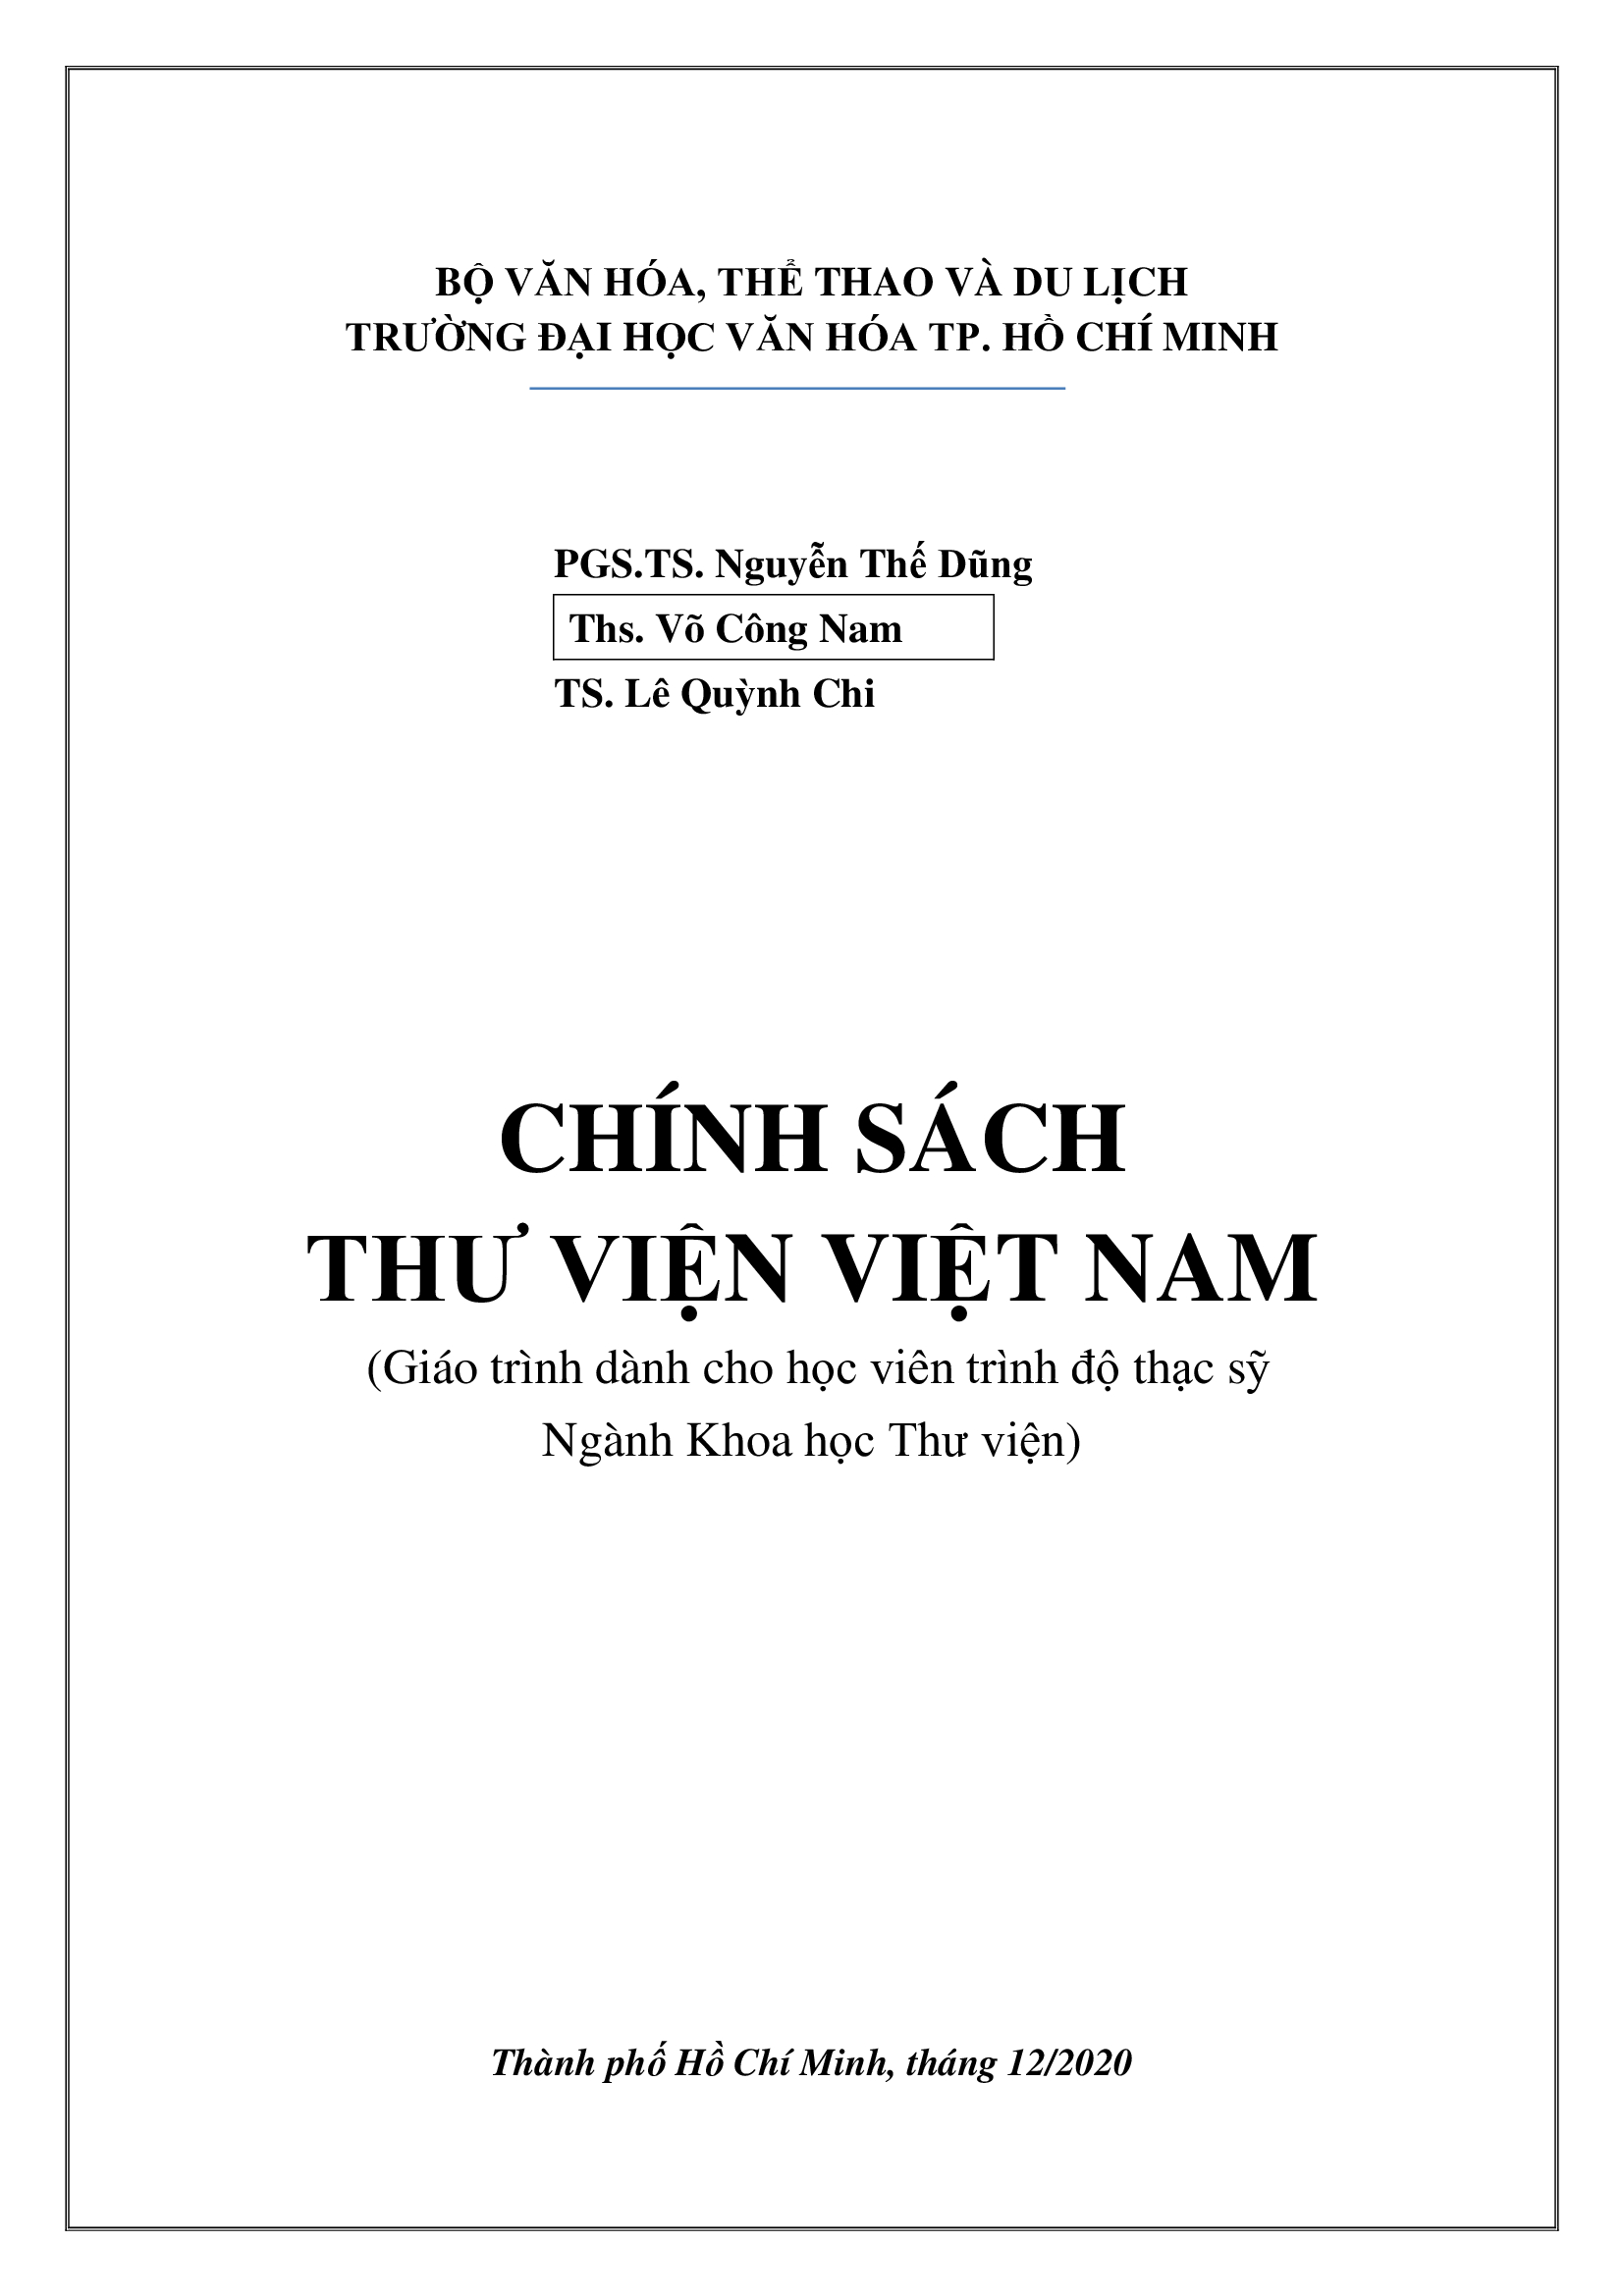 Chính sách thư viện Việt Nam